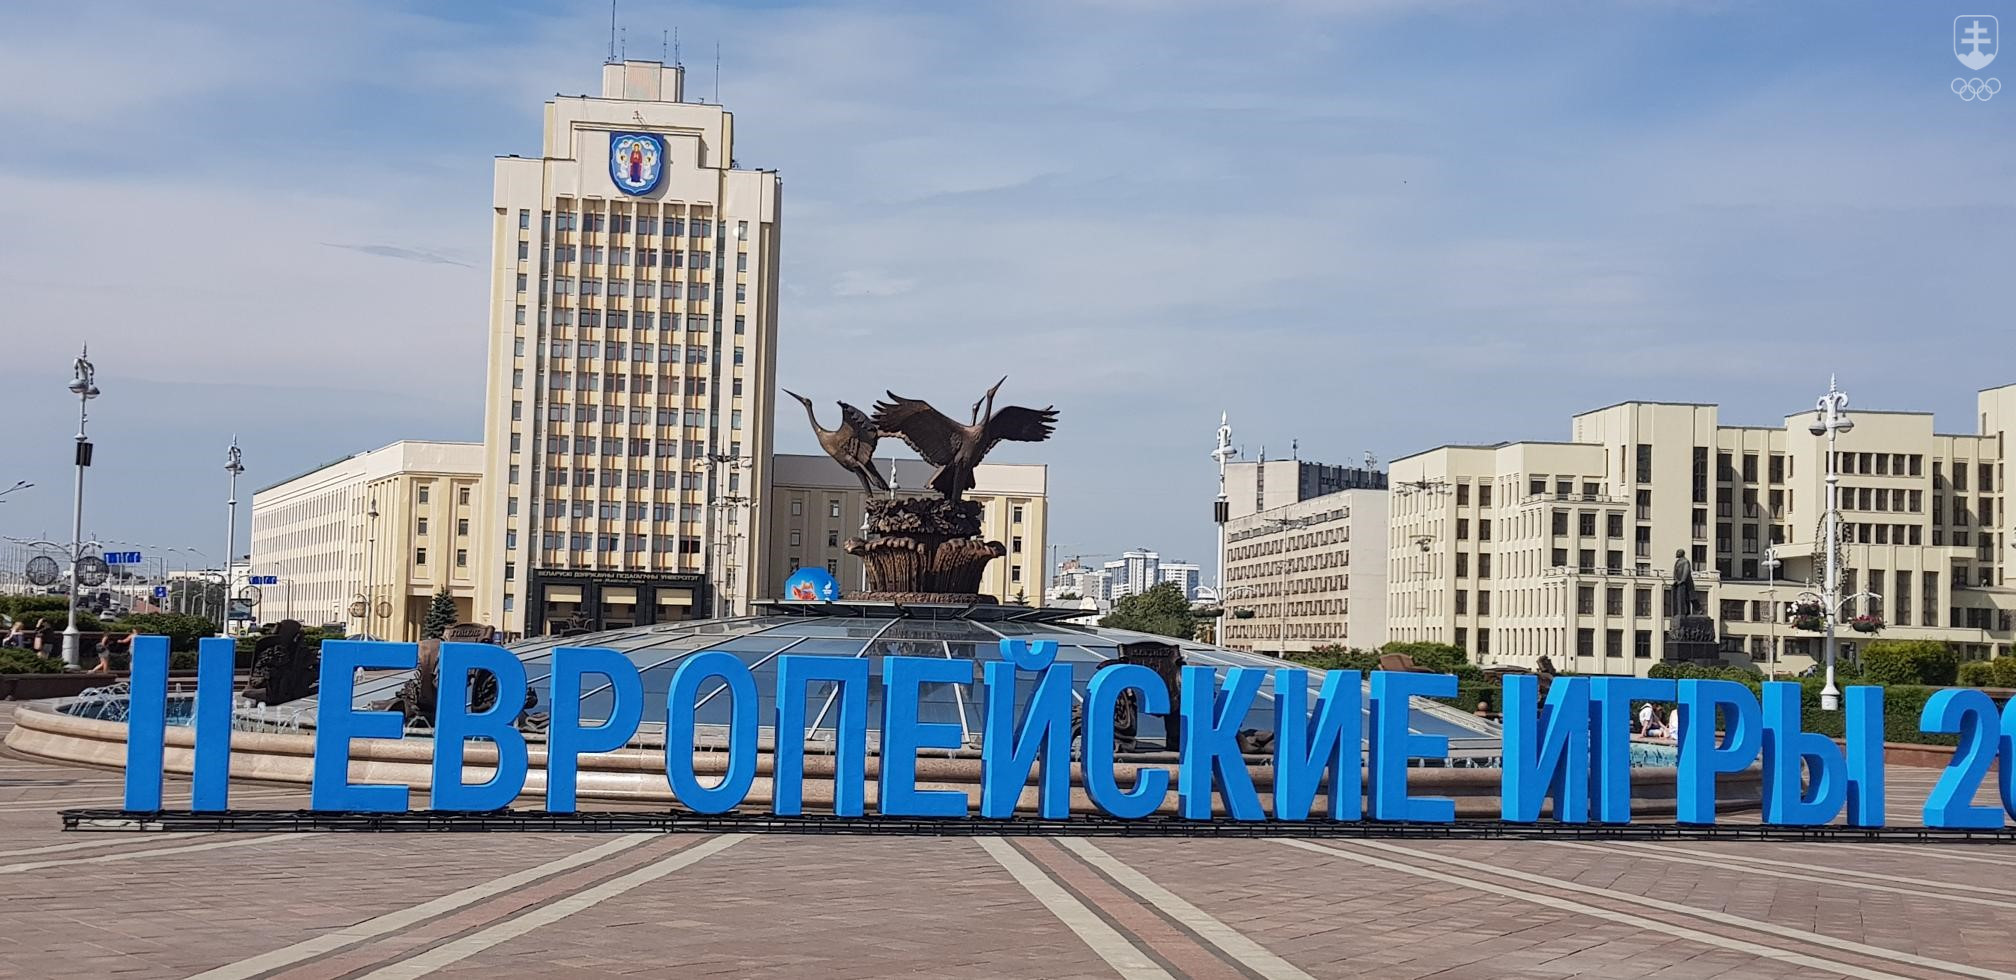 Fakt, že Minsk hostí II. európske hry, je v meste jednoducho neprehliadnuteľný. Branding podujatia vidno takmer na každom kroku.